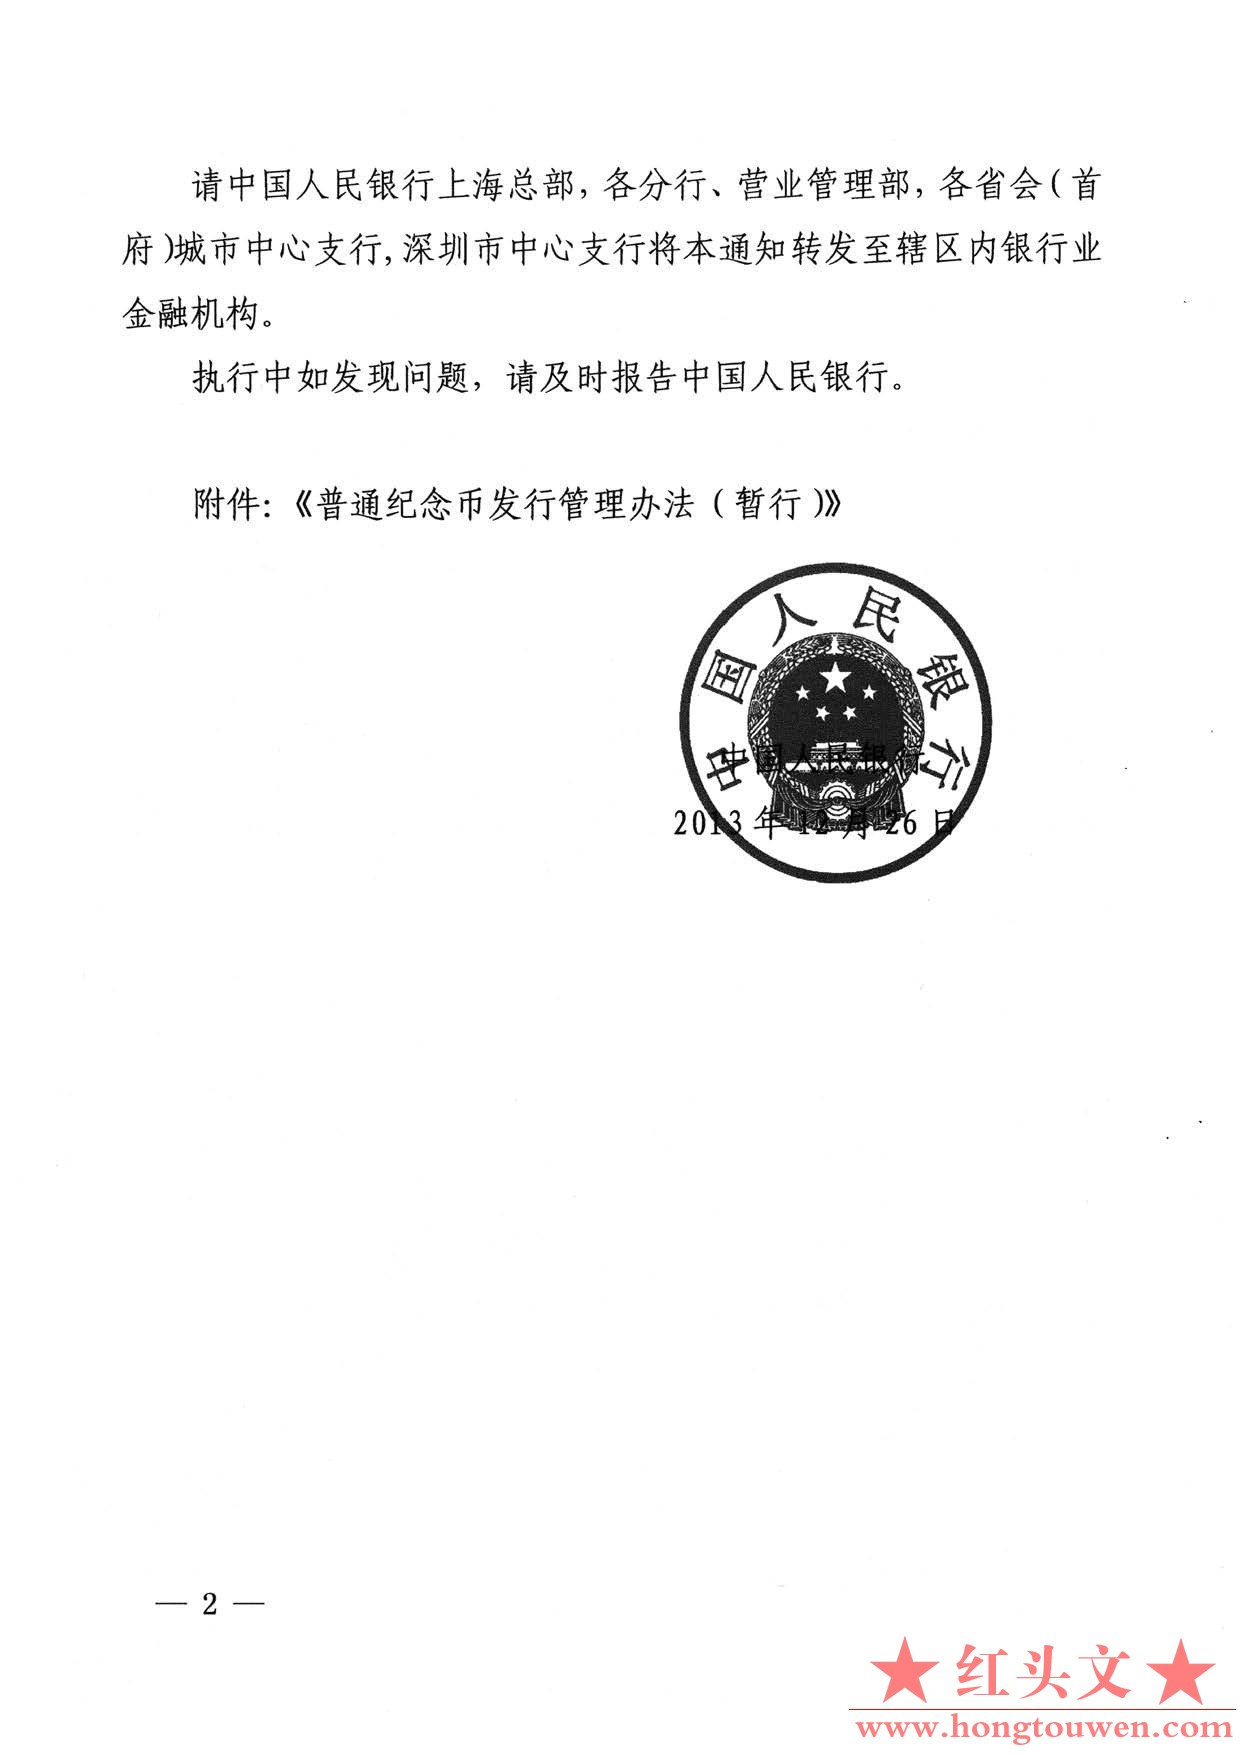 银发[2013]317号-中国人民银行关于印发《普通纪念币发行管理办法（暂行）》的通知_页.jpg